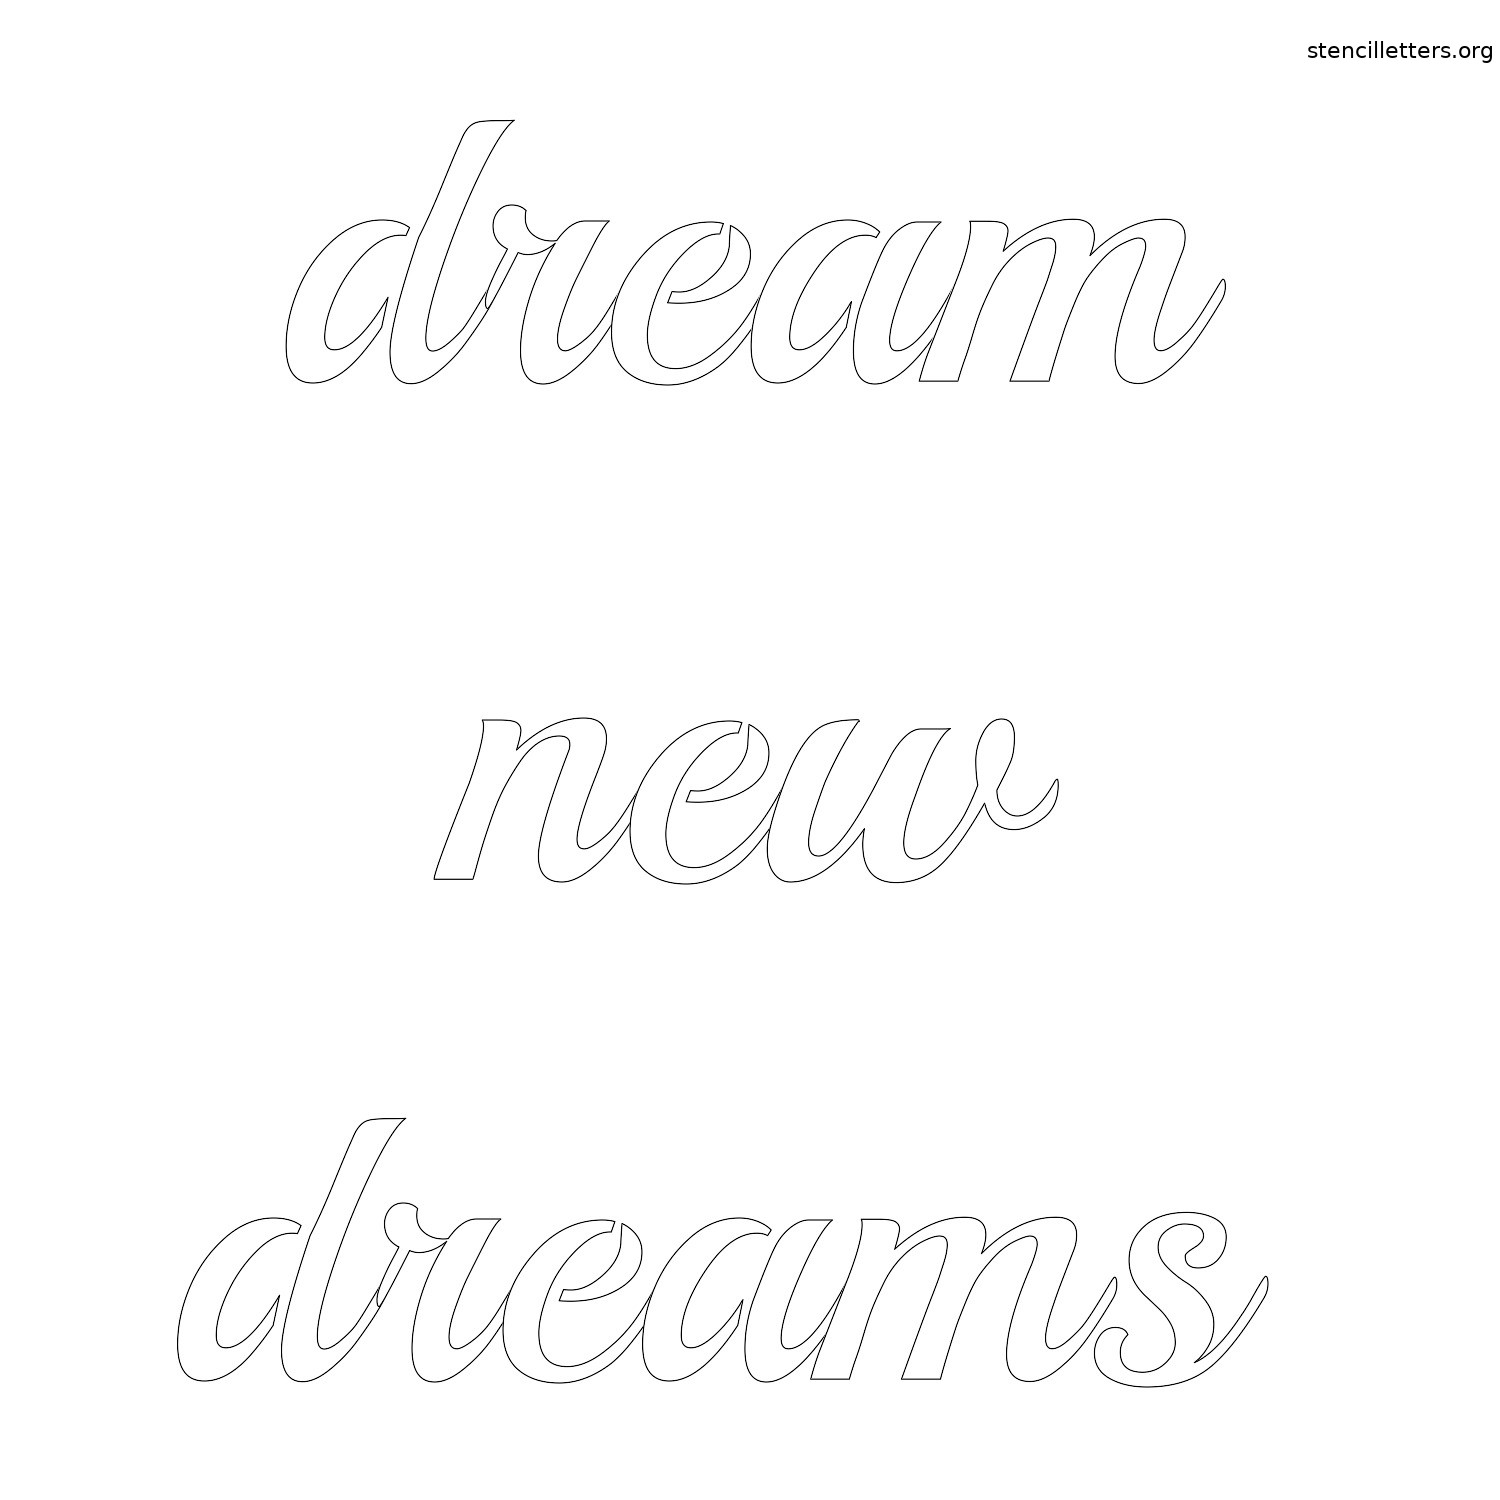 dream-new-dreams-quote-stencil-outline.jpg